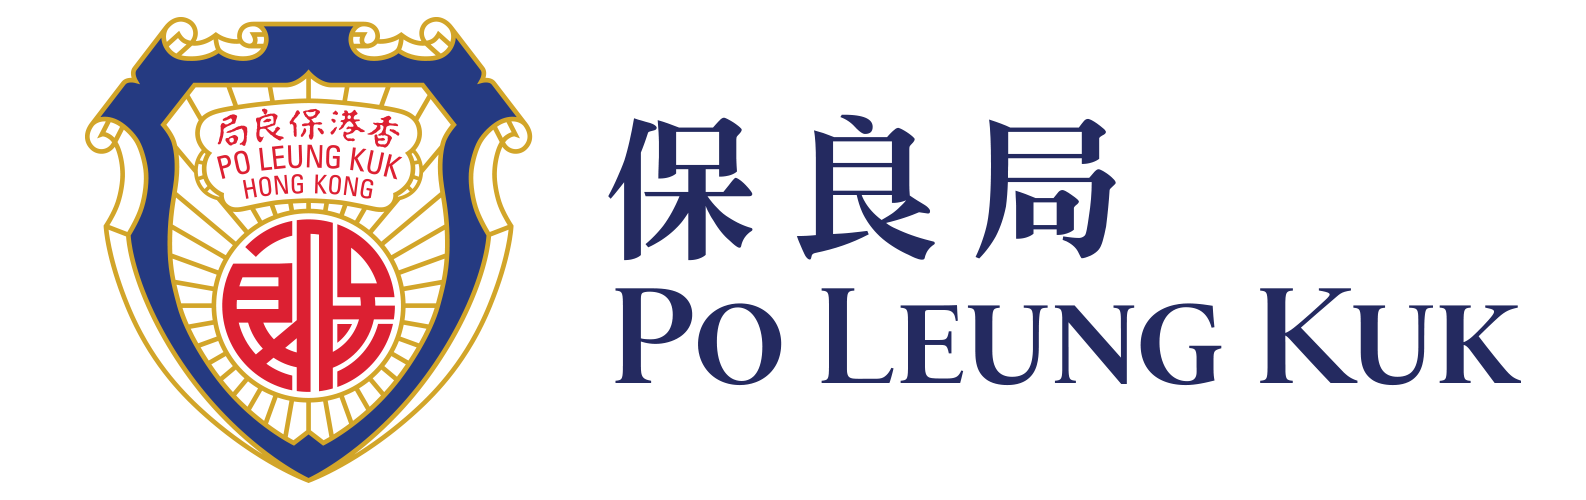 Po Leung Kuk 保良局